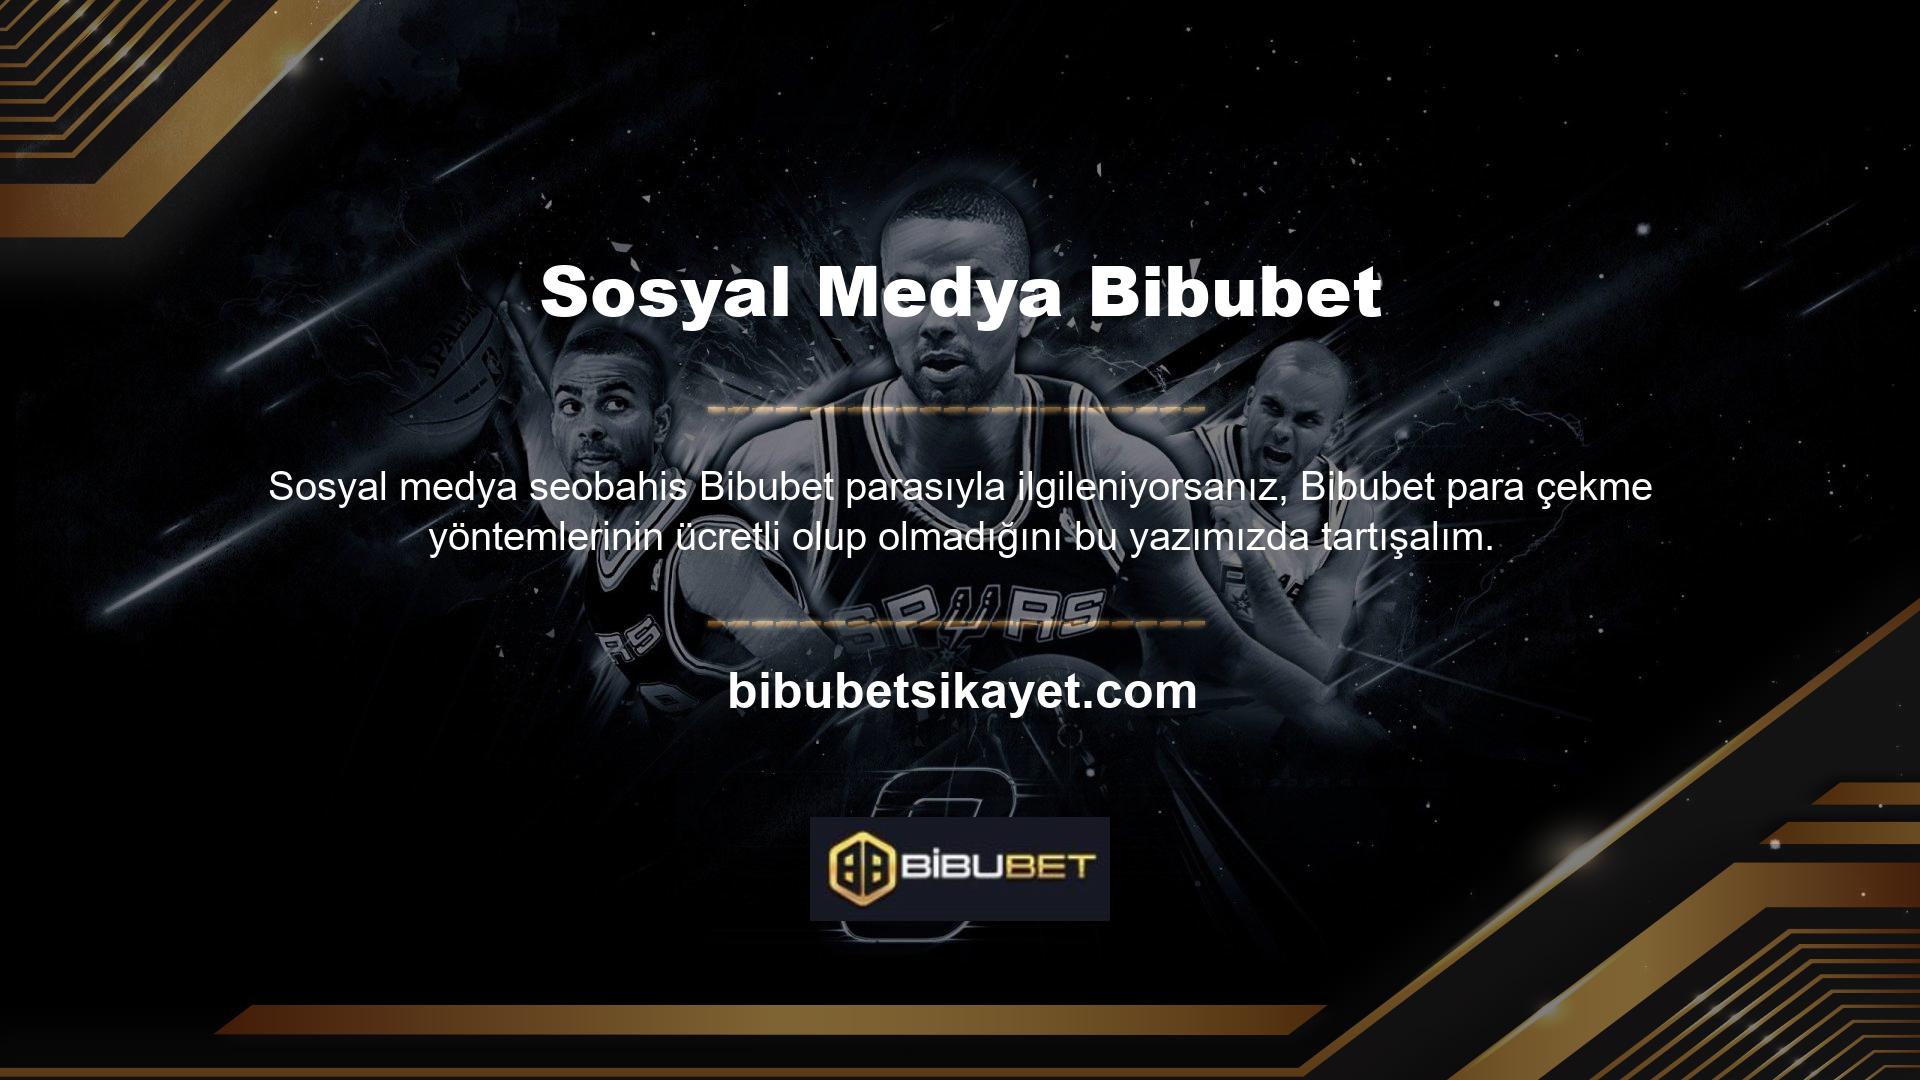 Bibubet web sitesi saygın, kaliteli bahisçilerden biridir ve her zaman müşterilerinin ilgisini çekmektedir